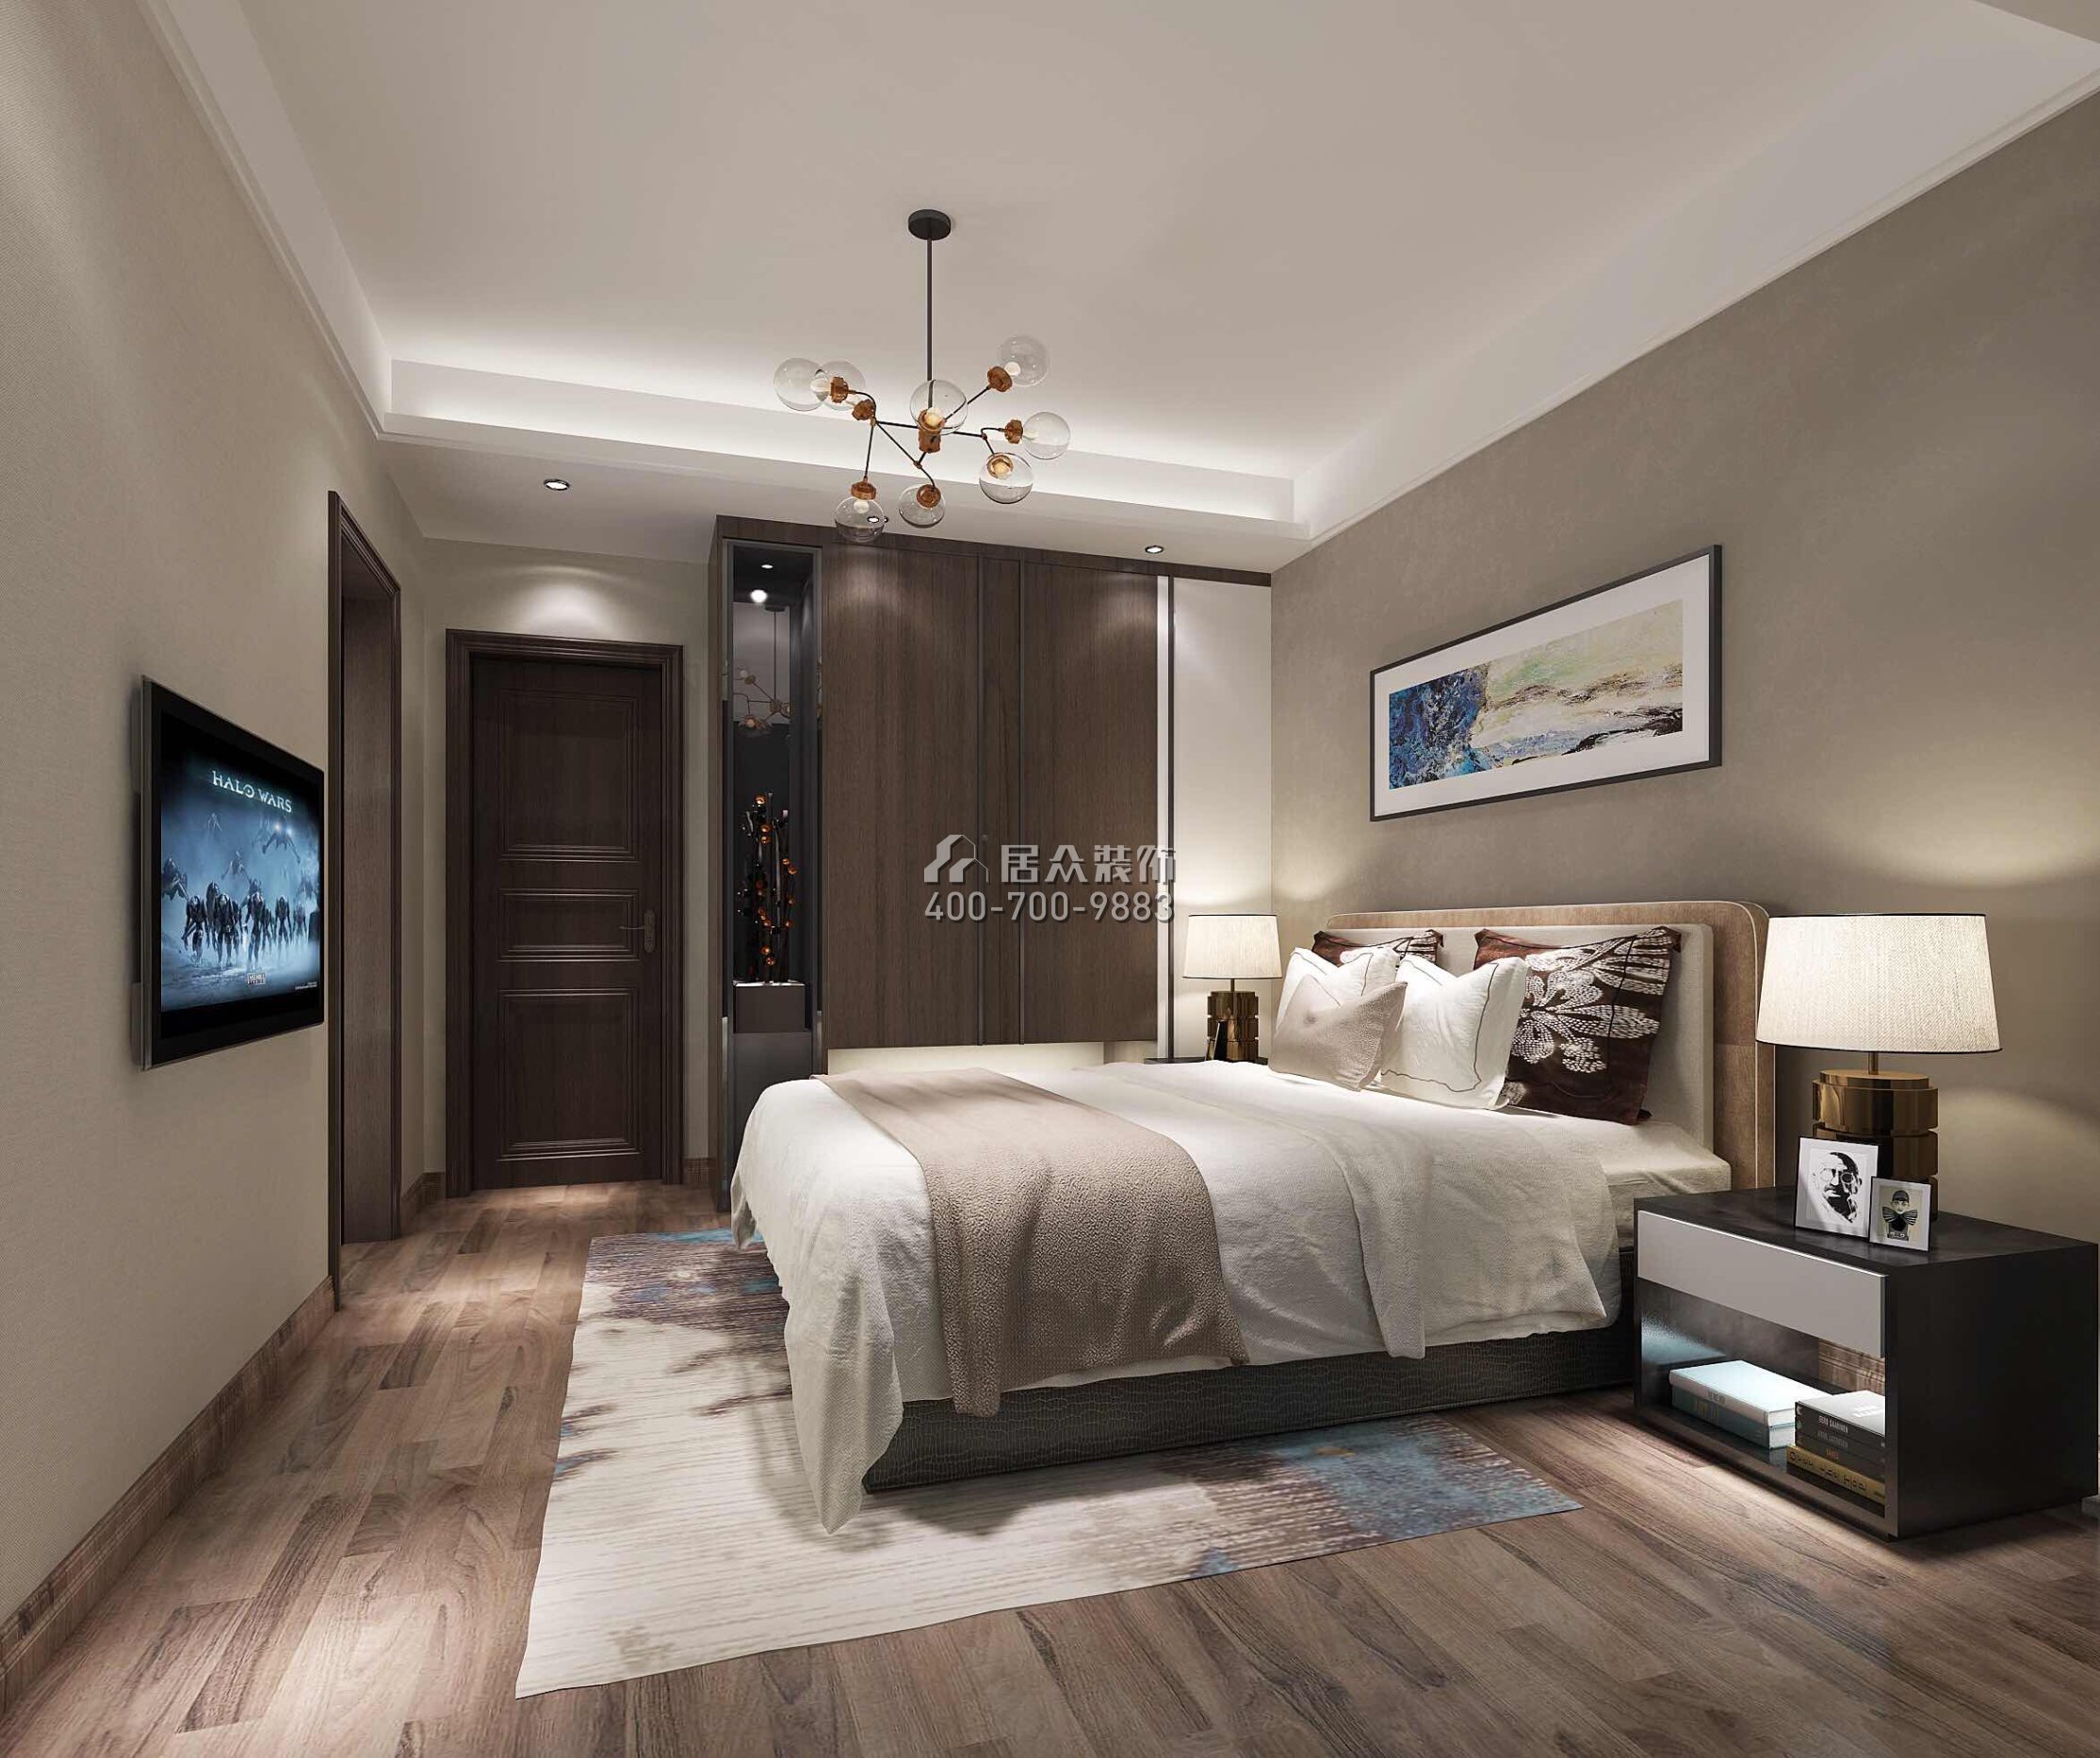 誉江华府450平方米现代简约风格复式户型卧室装修效果图